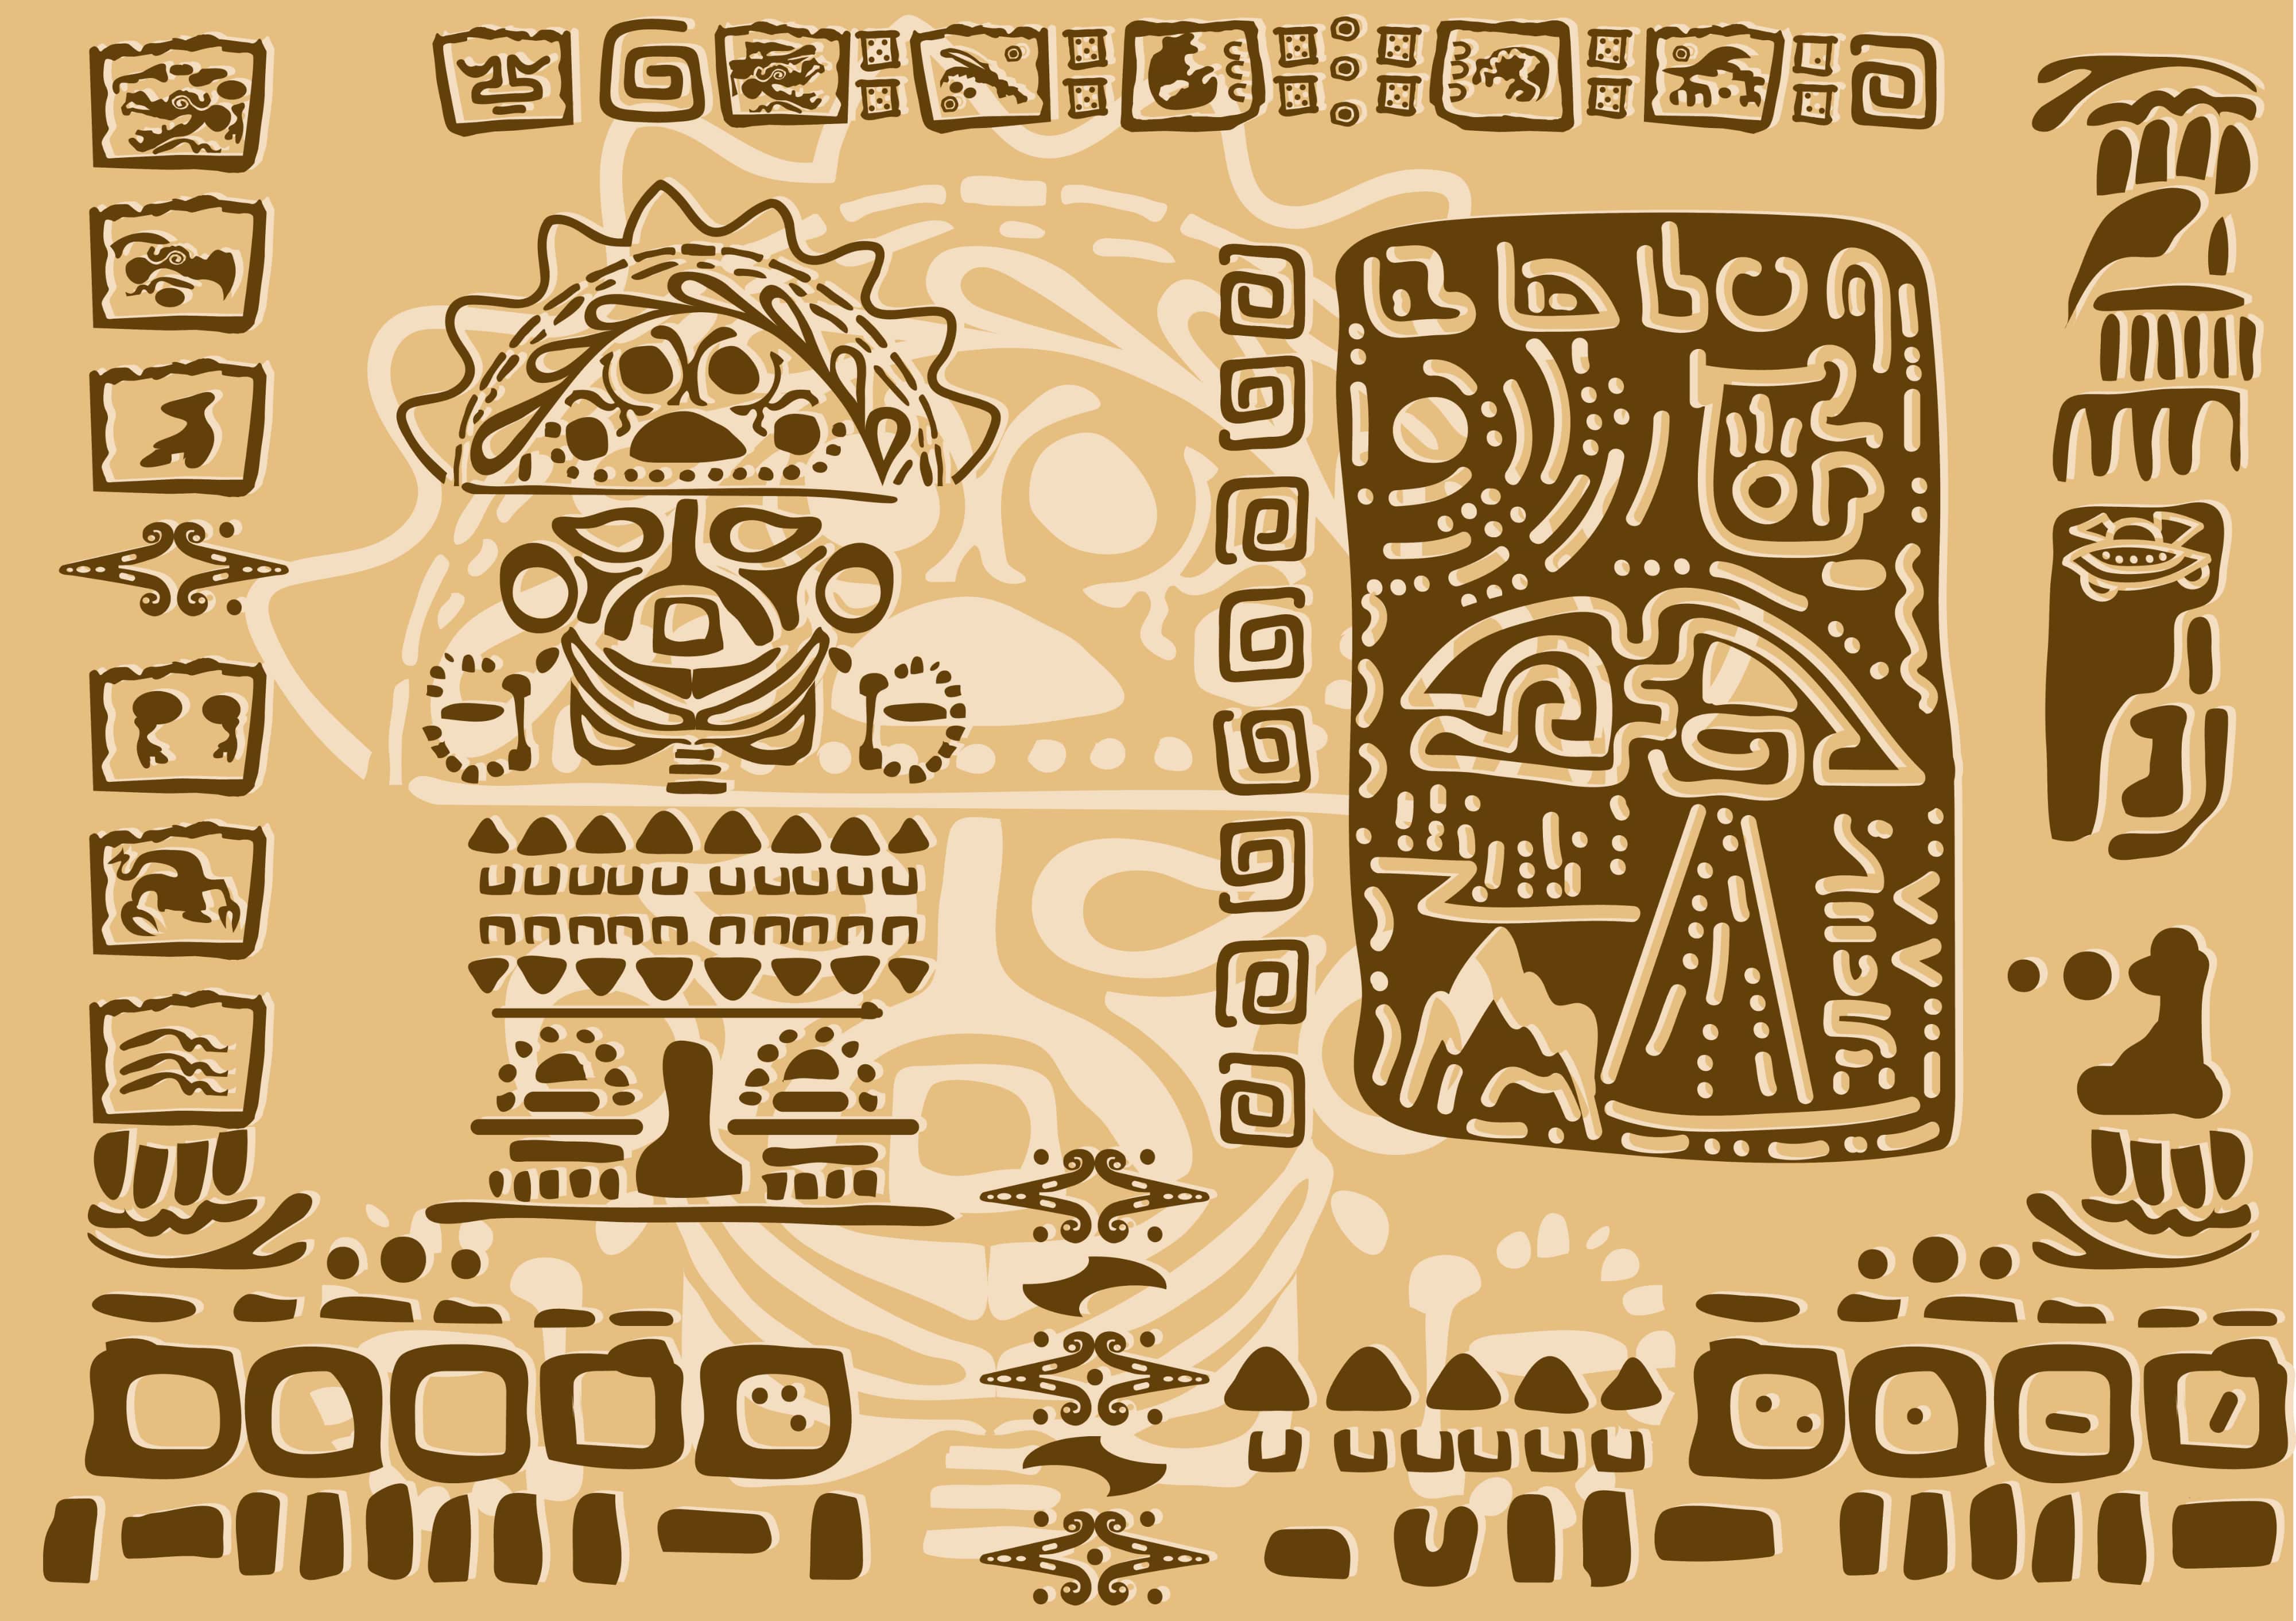 Aztec Civilization Facts